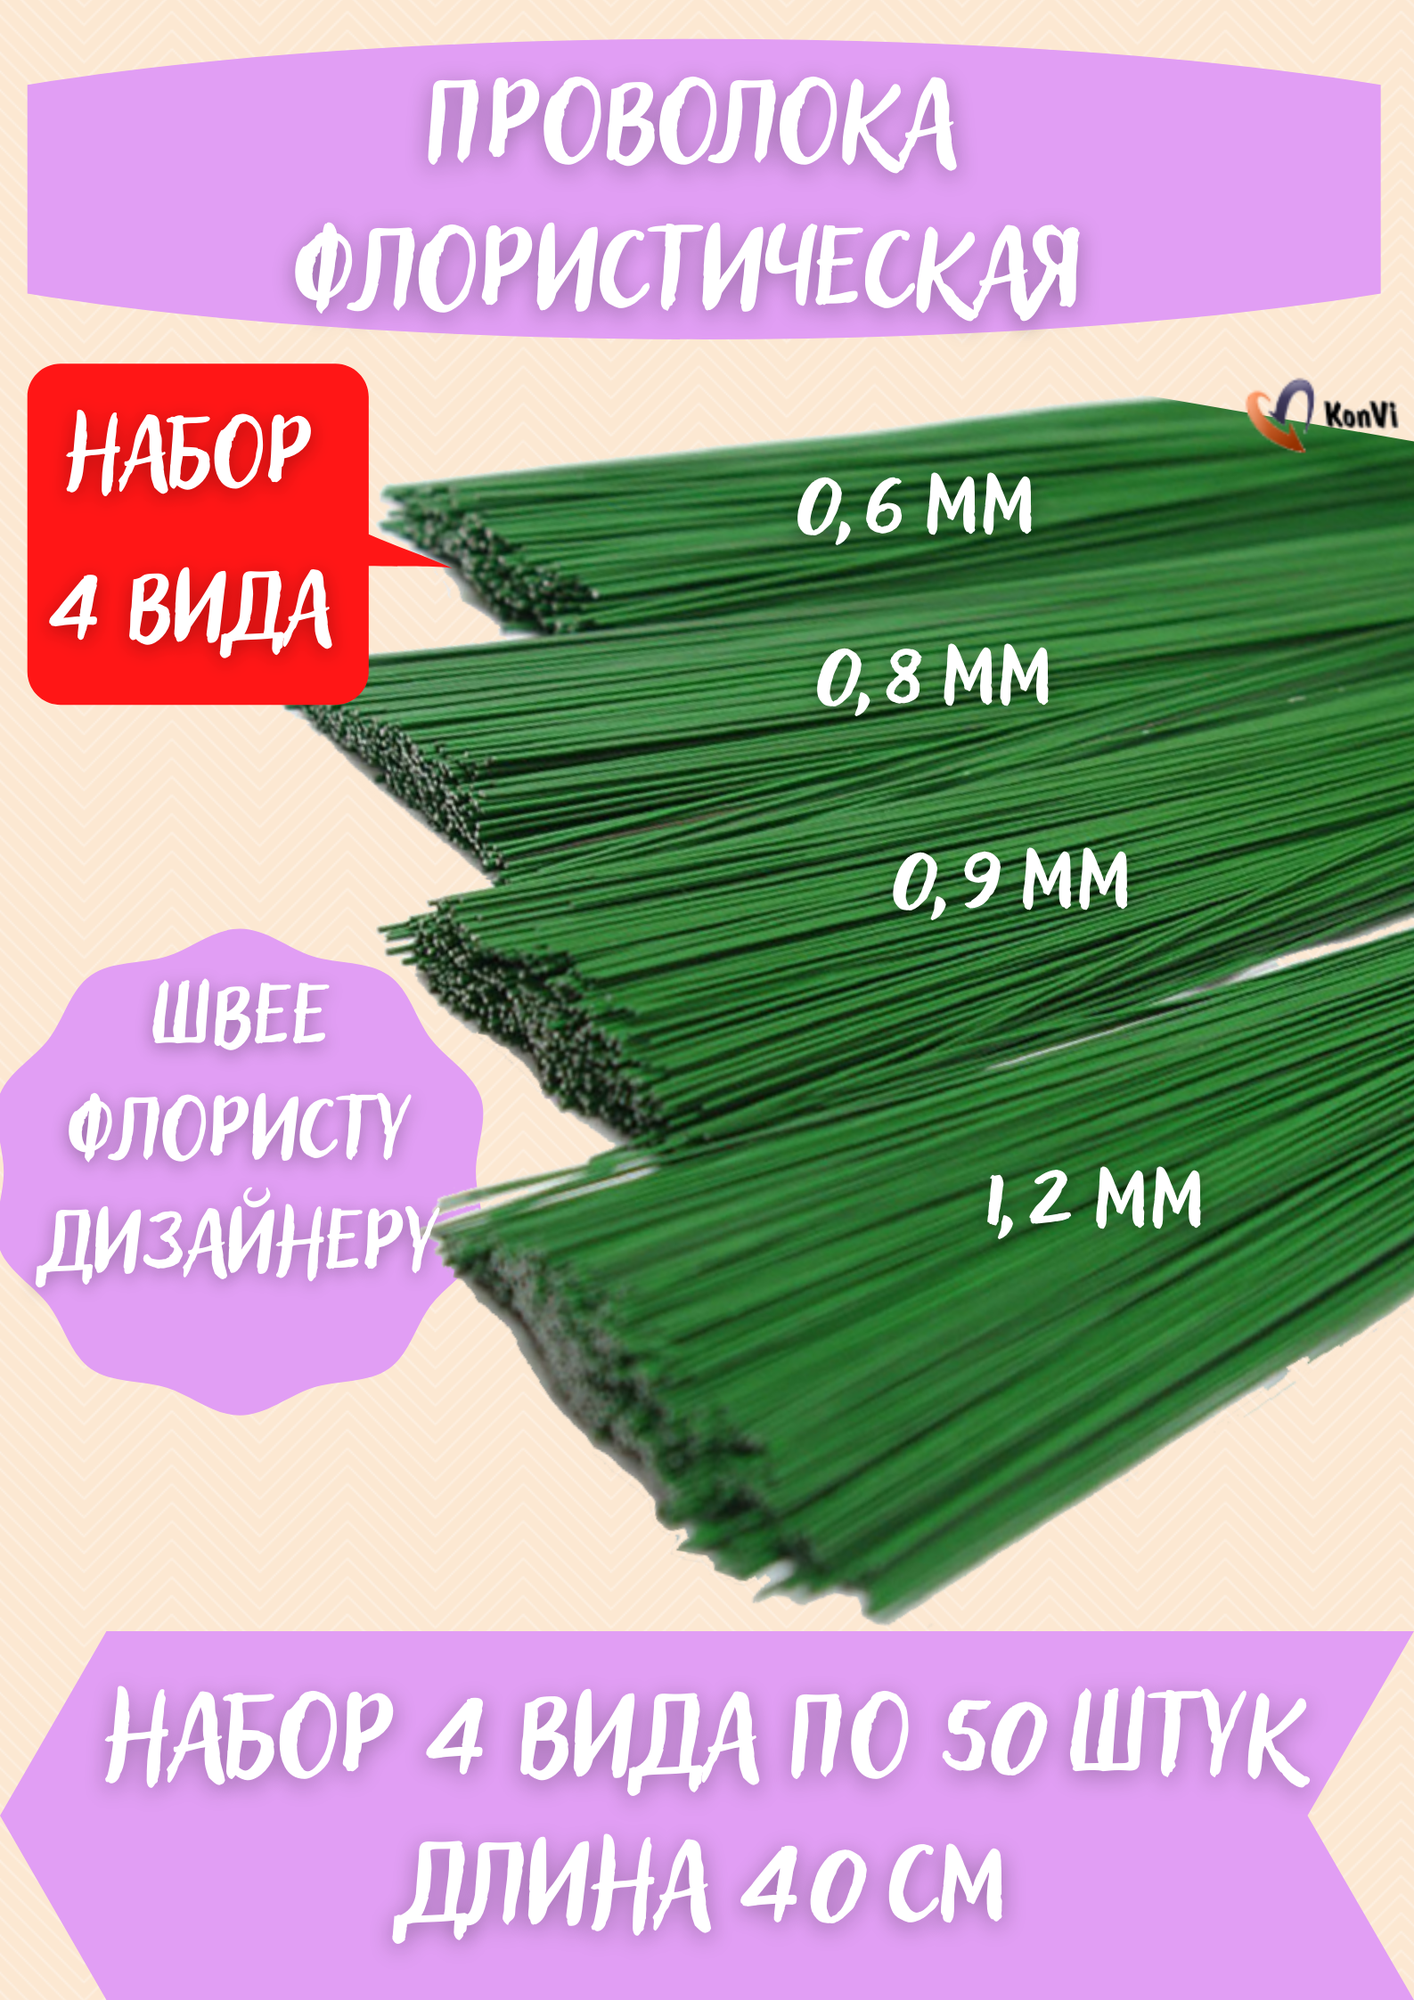 Проволока герберная зеленая набор д 0.6 0.8 0.9 1.2мм по 50шт